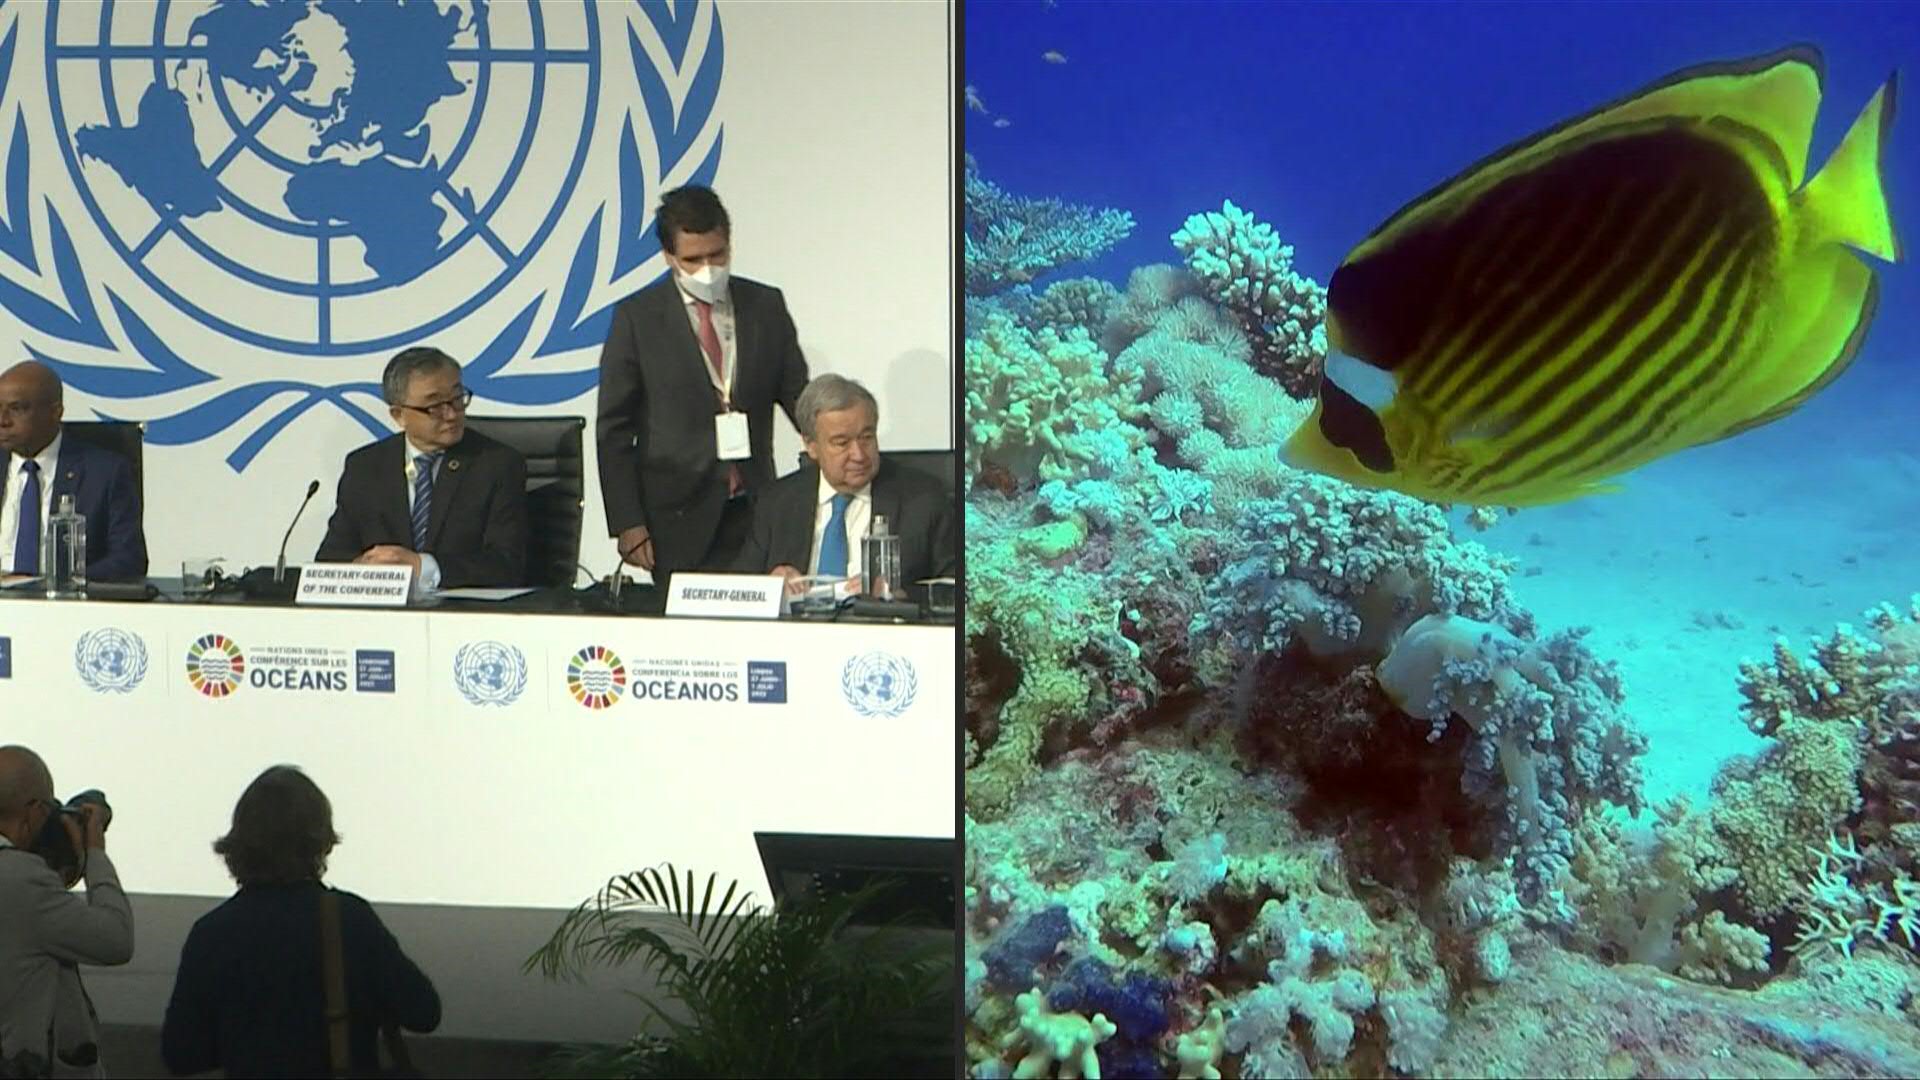 El mundo enfrenta una "emergencia" en los océanos que amenaza a la naturaleza y a la humanidad, dijo el lunes el secretario general de la ONU Antonio Guterres al inicio de una importante conferencia de la organización sobre en Lisboa 